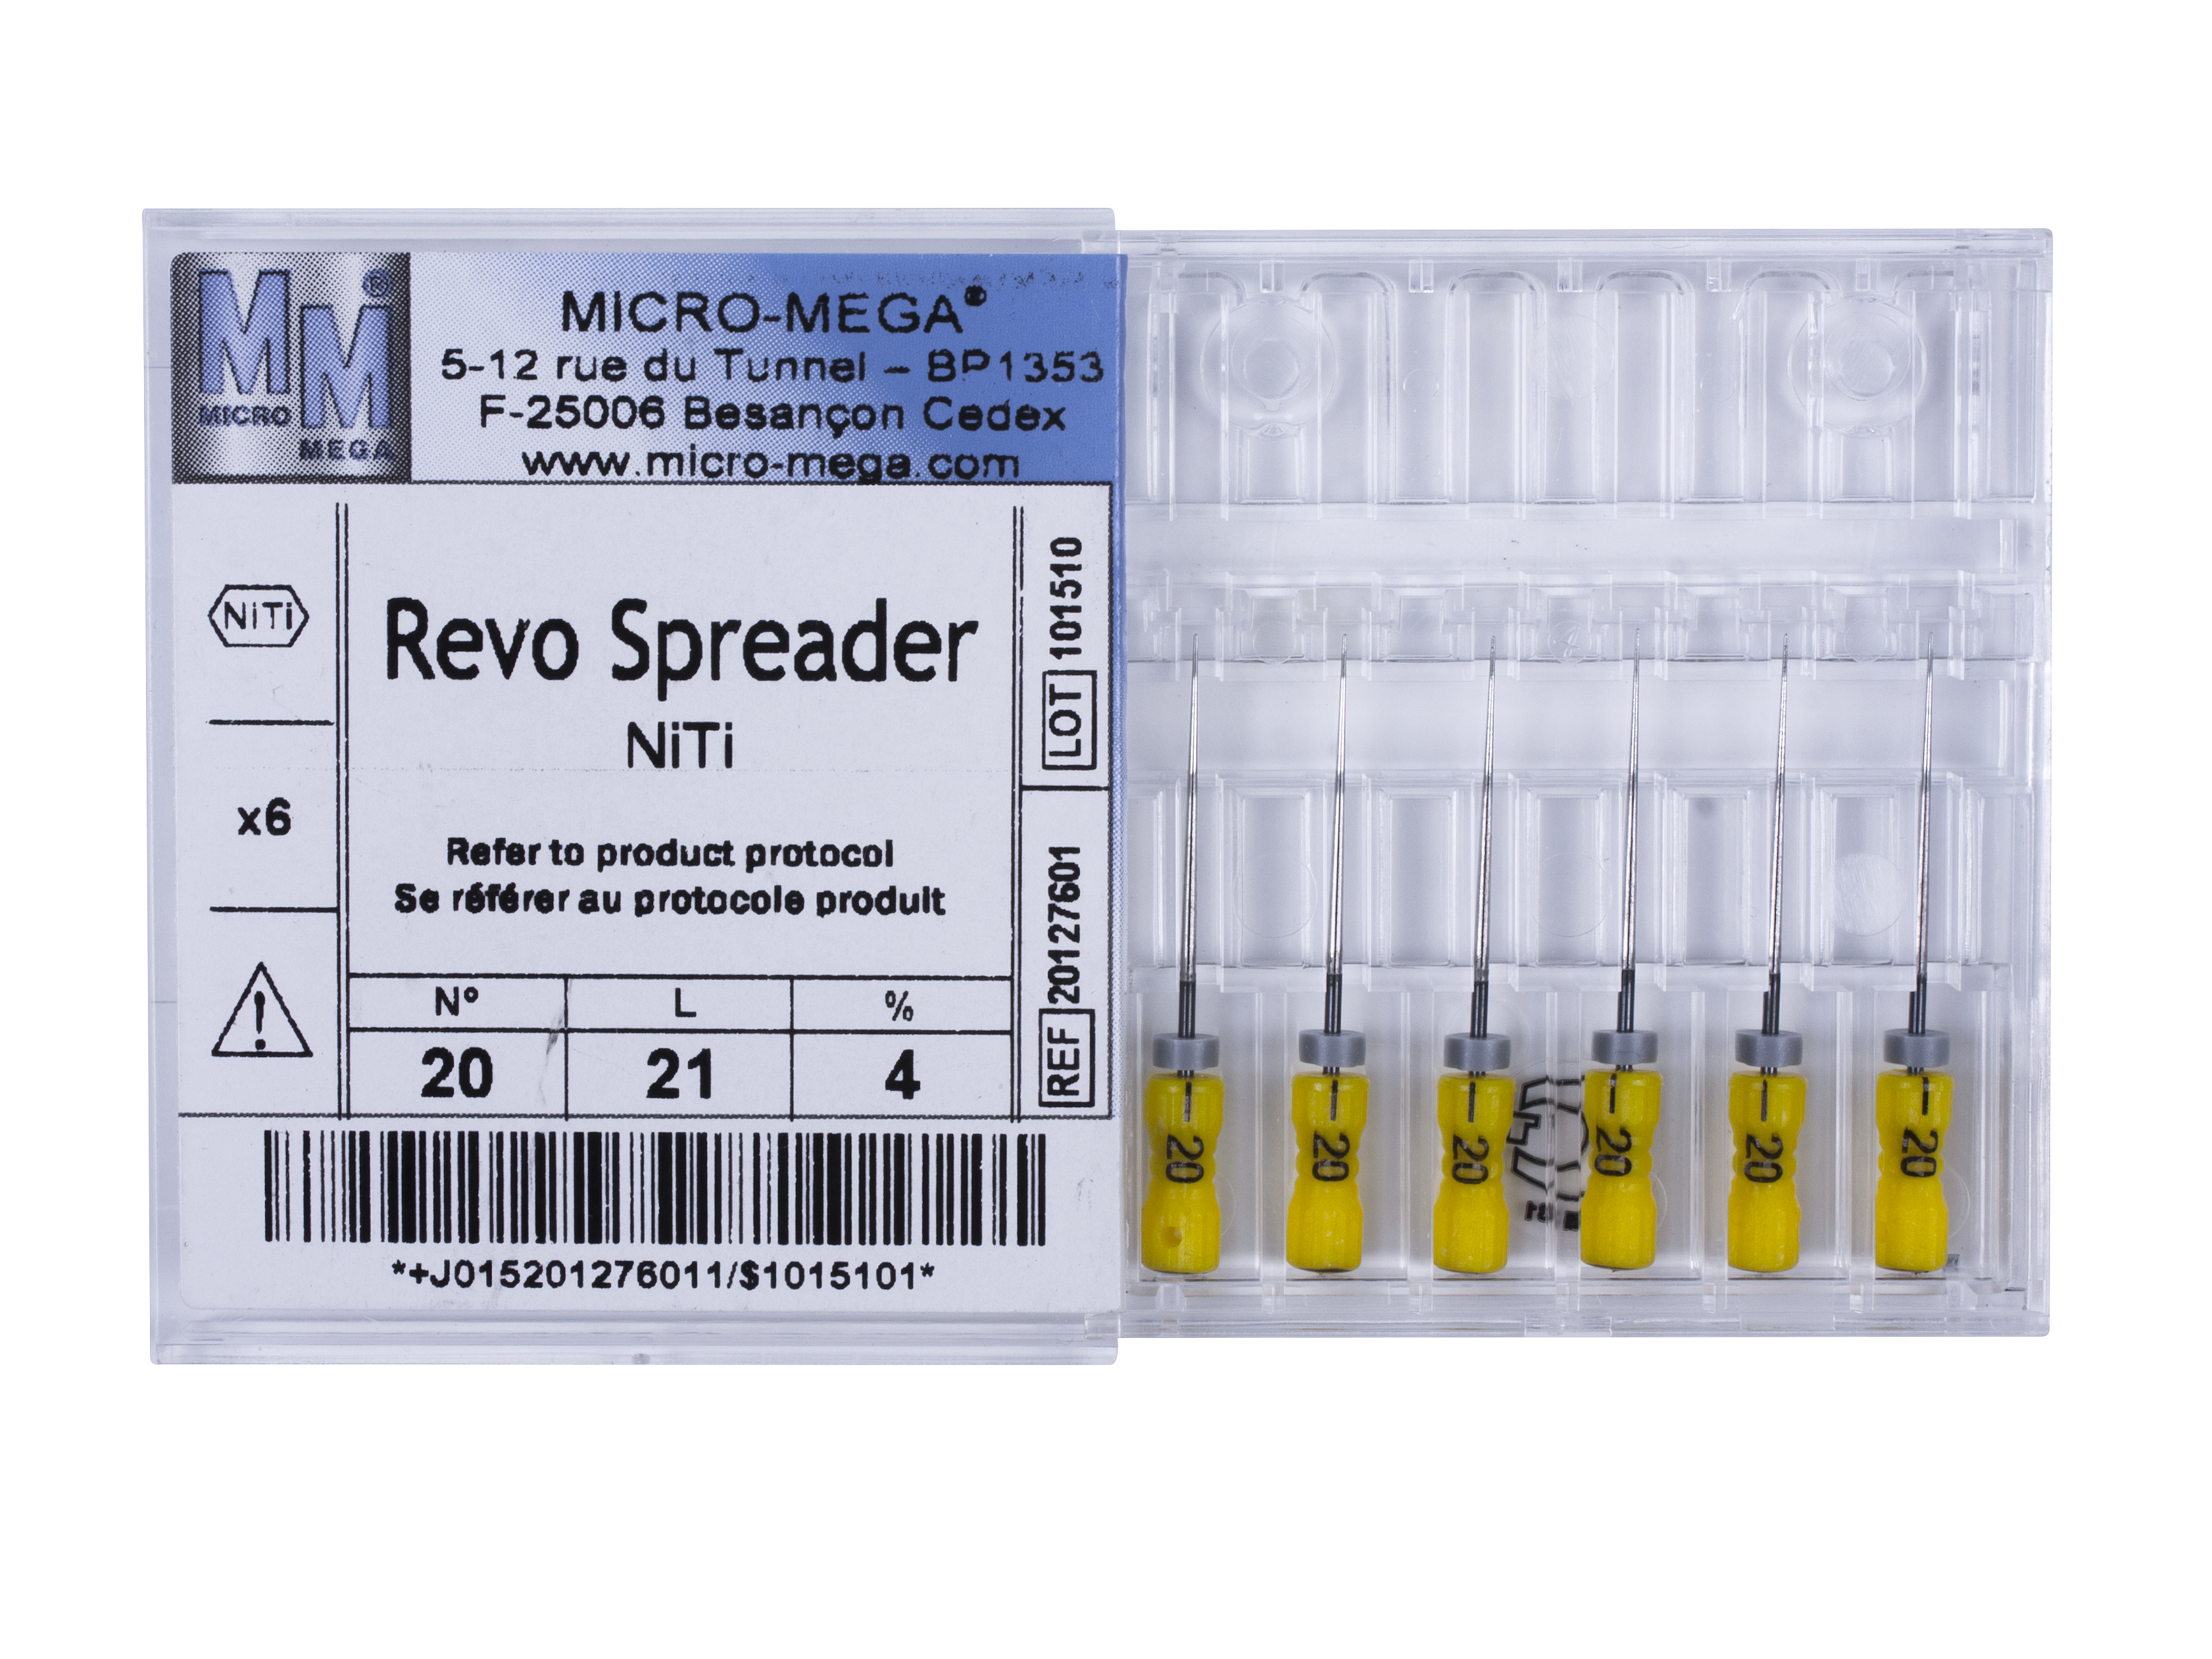 Revo Spreader n20 L21 4% NiTi handle 09 - инструменты эндодонтические